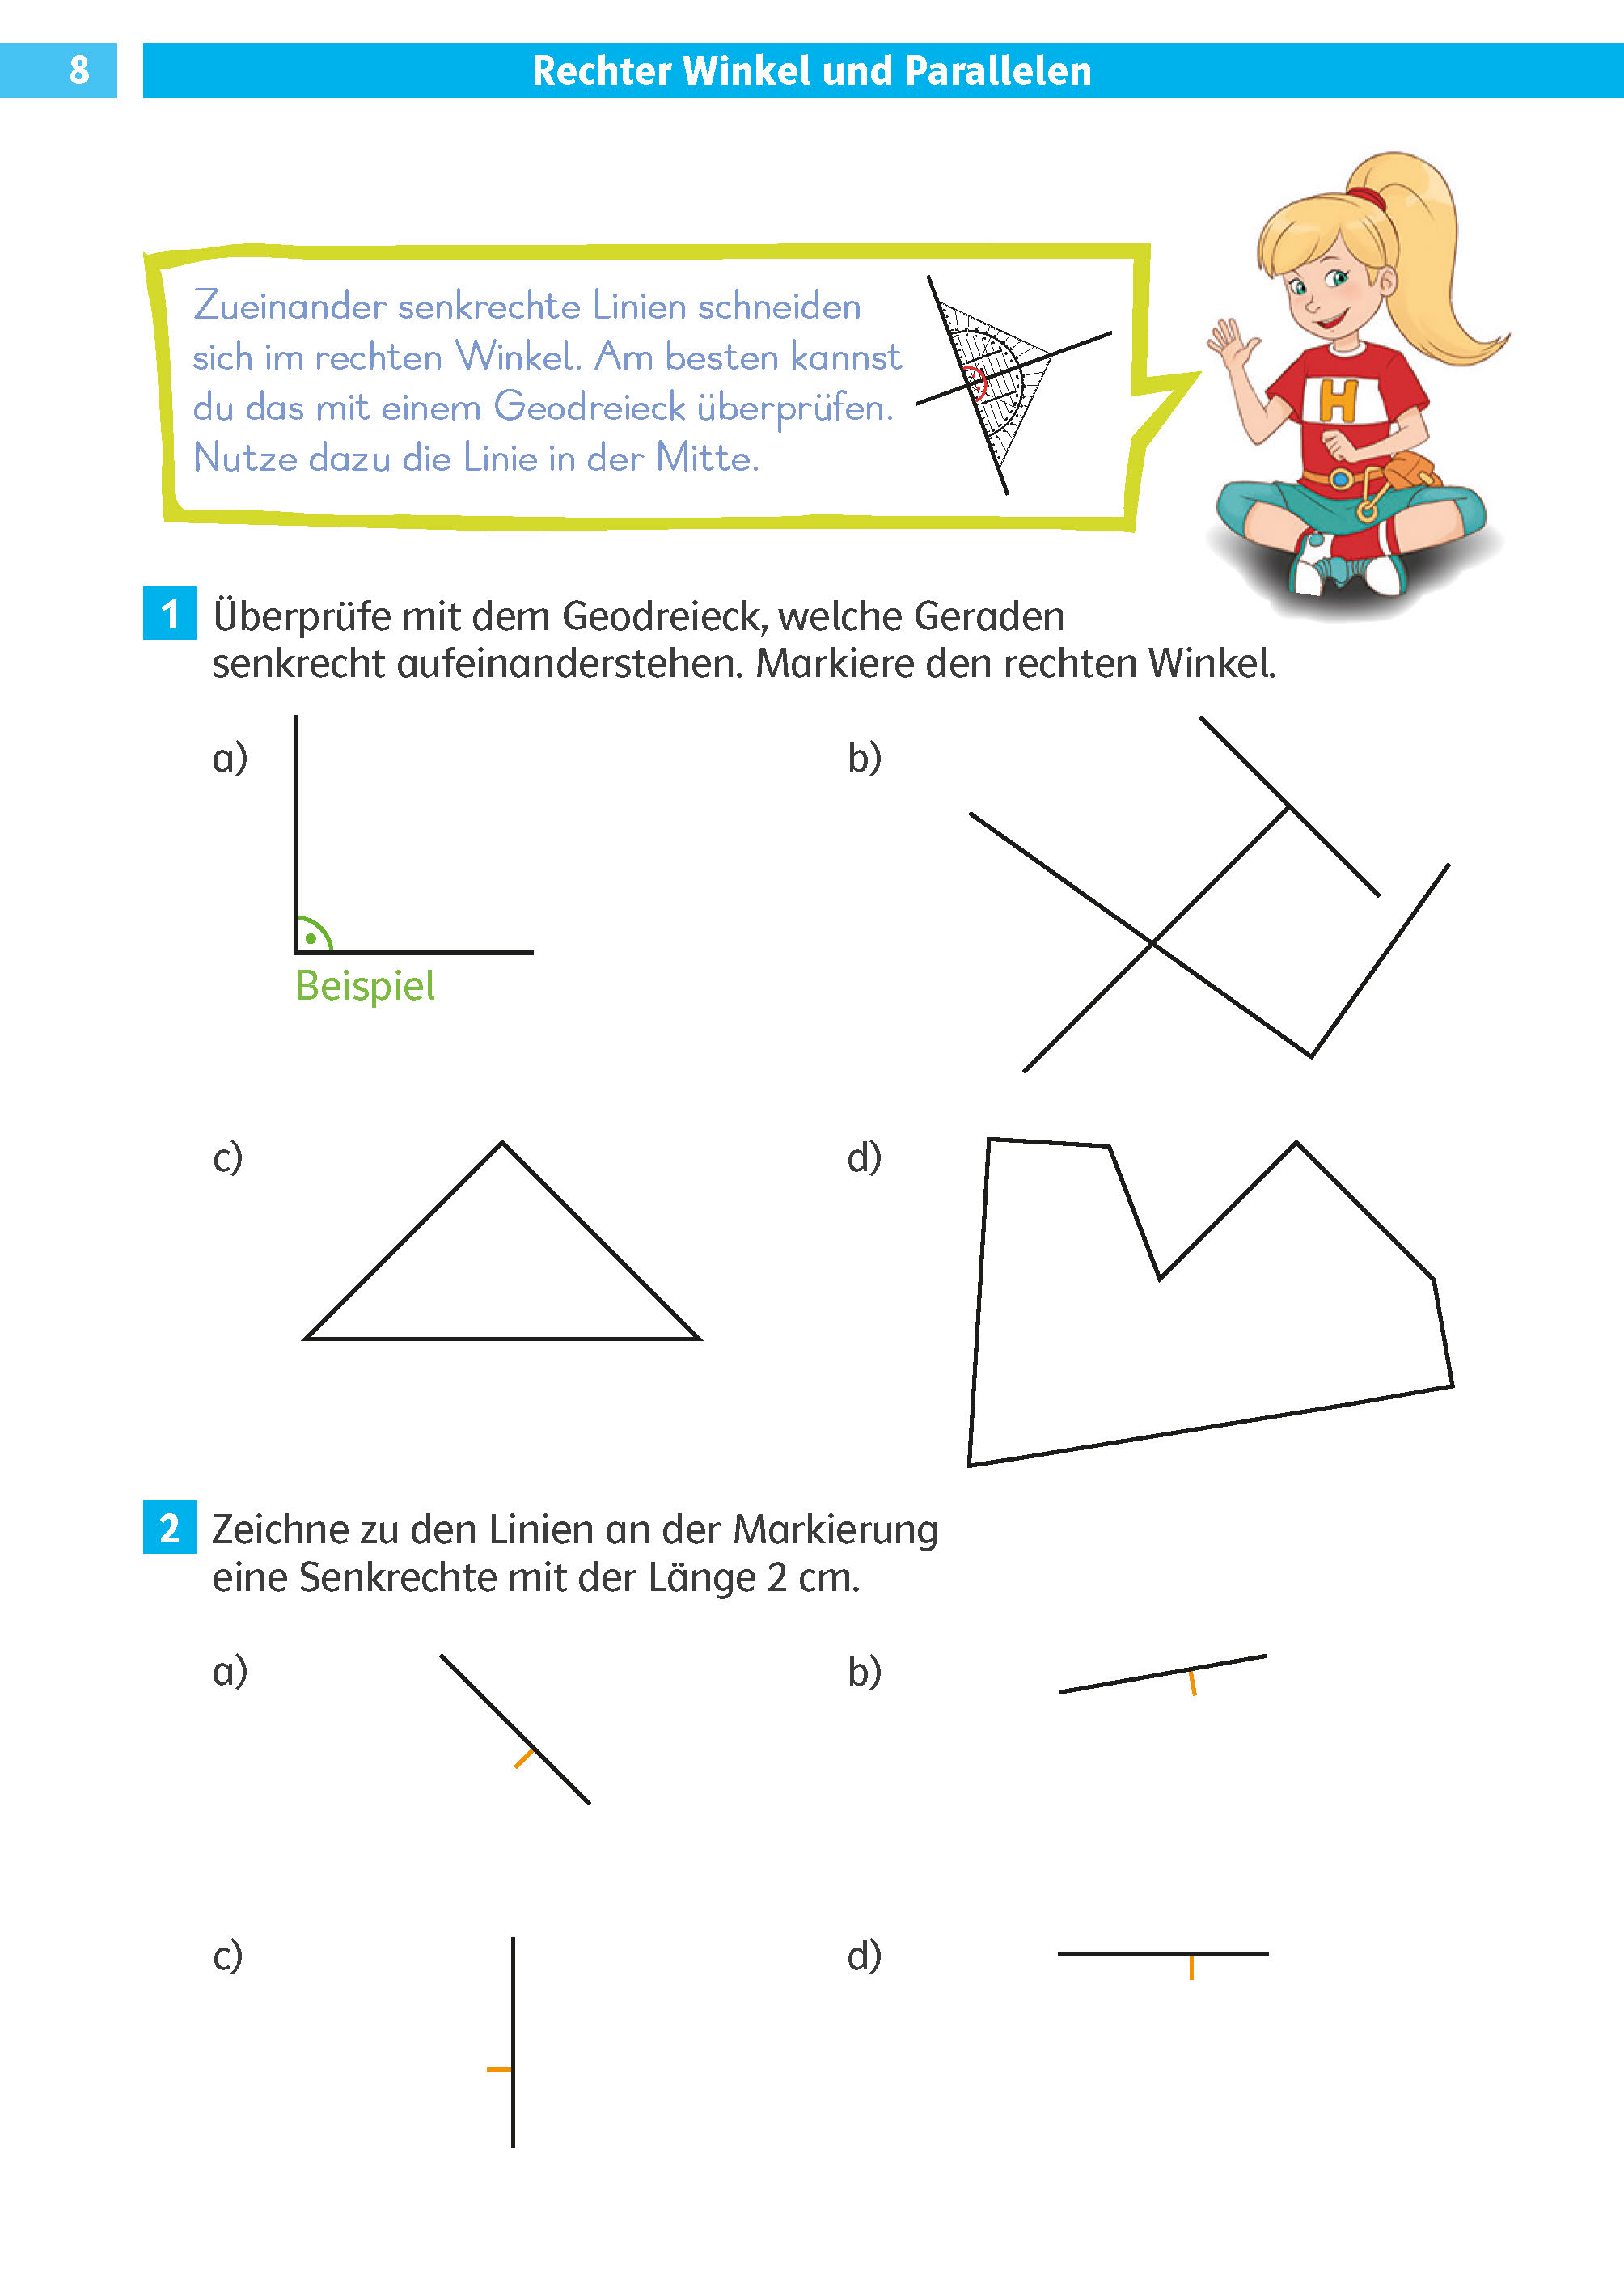 Klett Die Mathe-Helden: Geometrie 3./4. Klasse